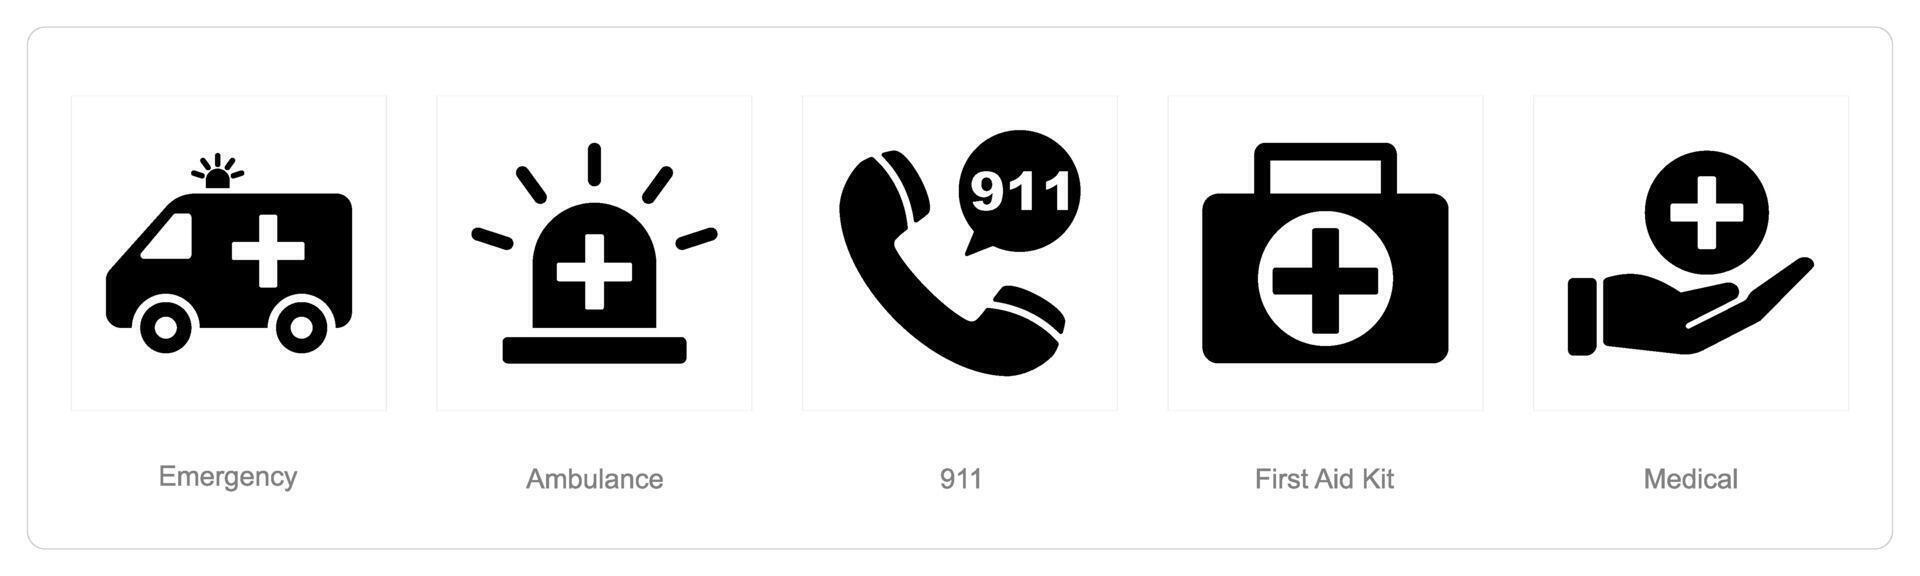 en uppsättning av 5 nödsituation ikoner som nödsituation, ambulans, 911 vektor